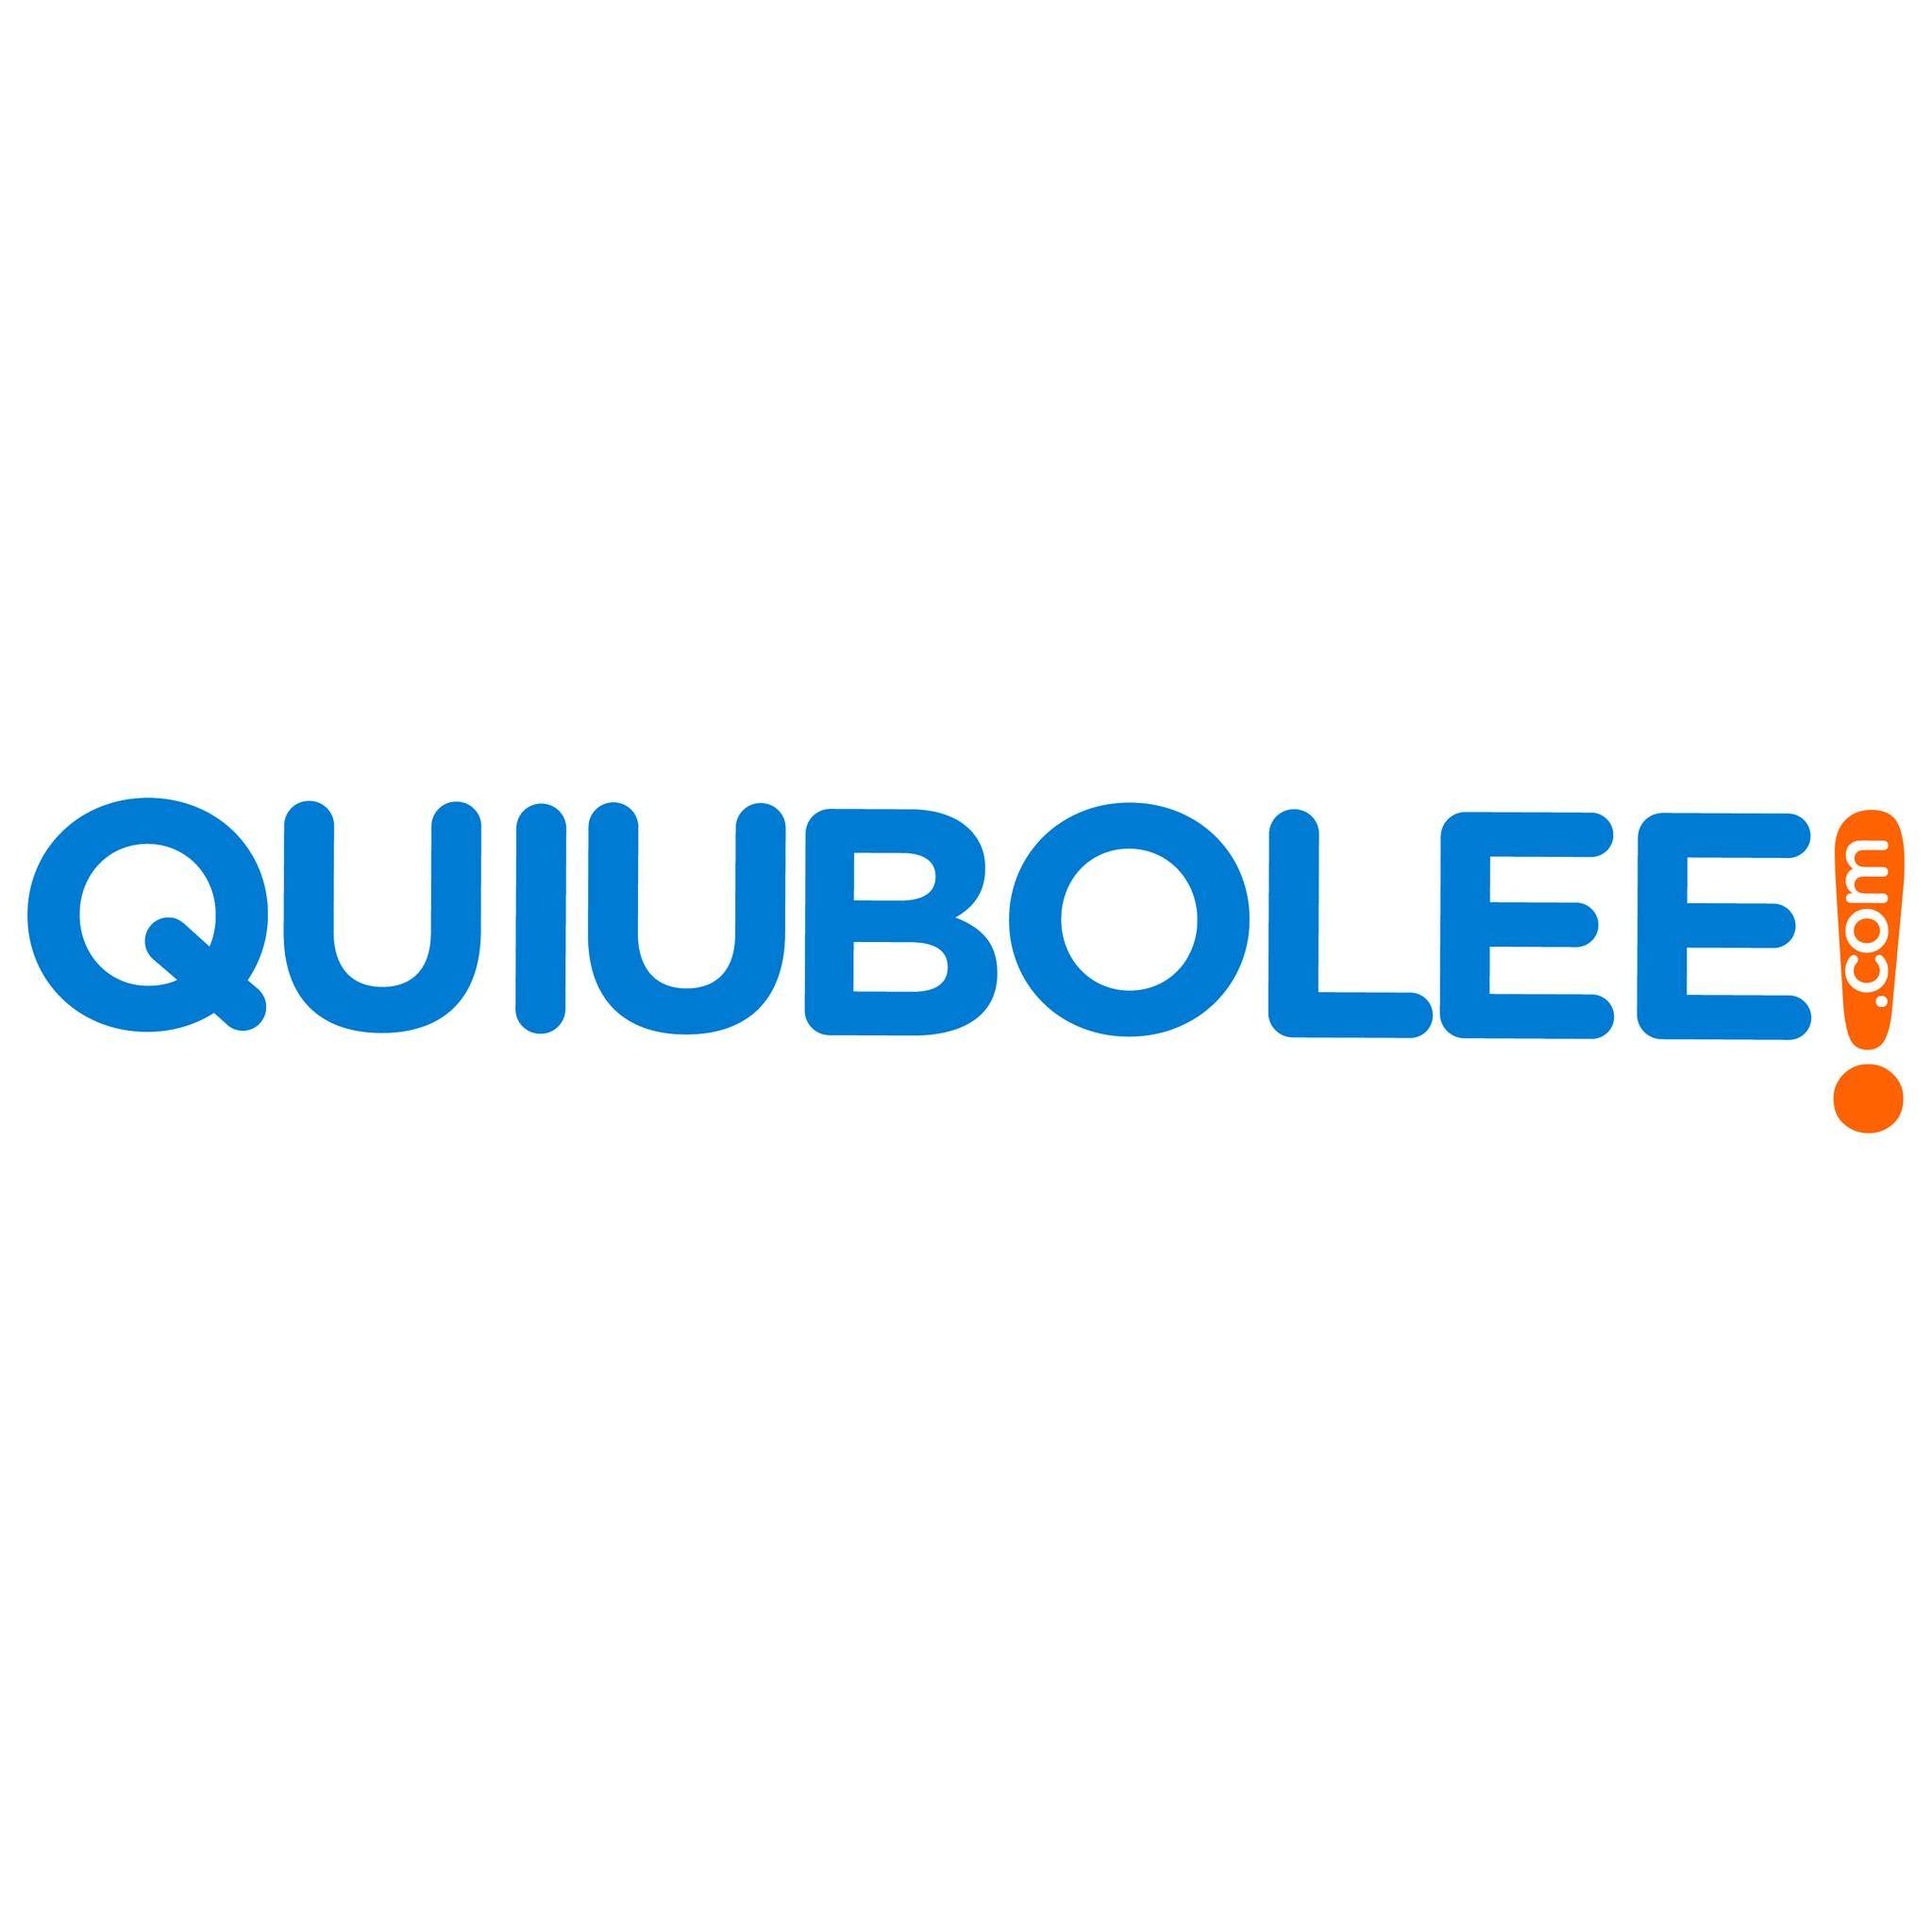 Quiubolee